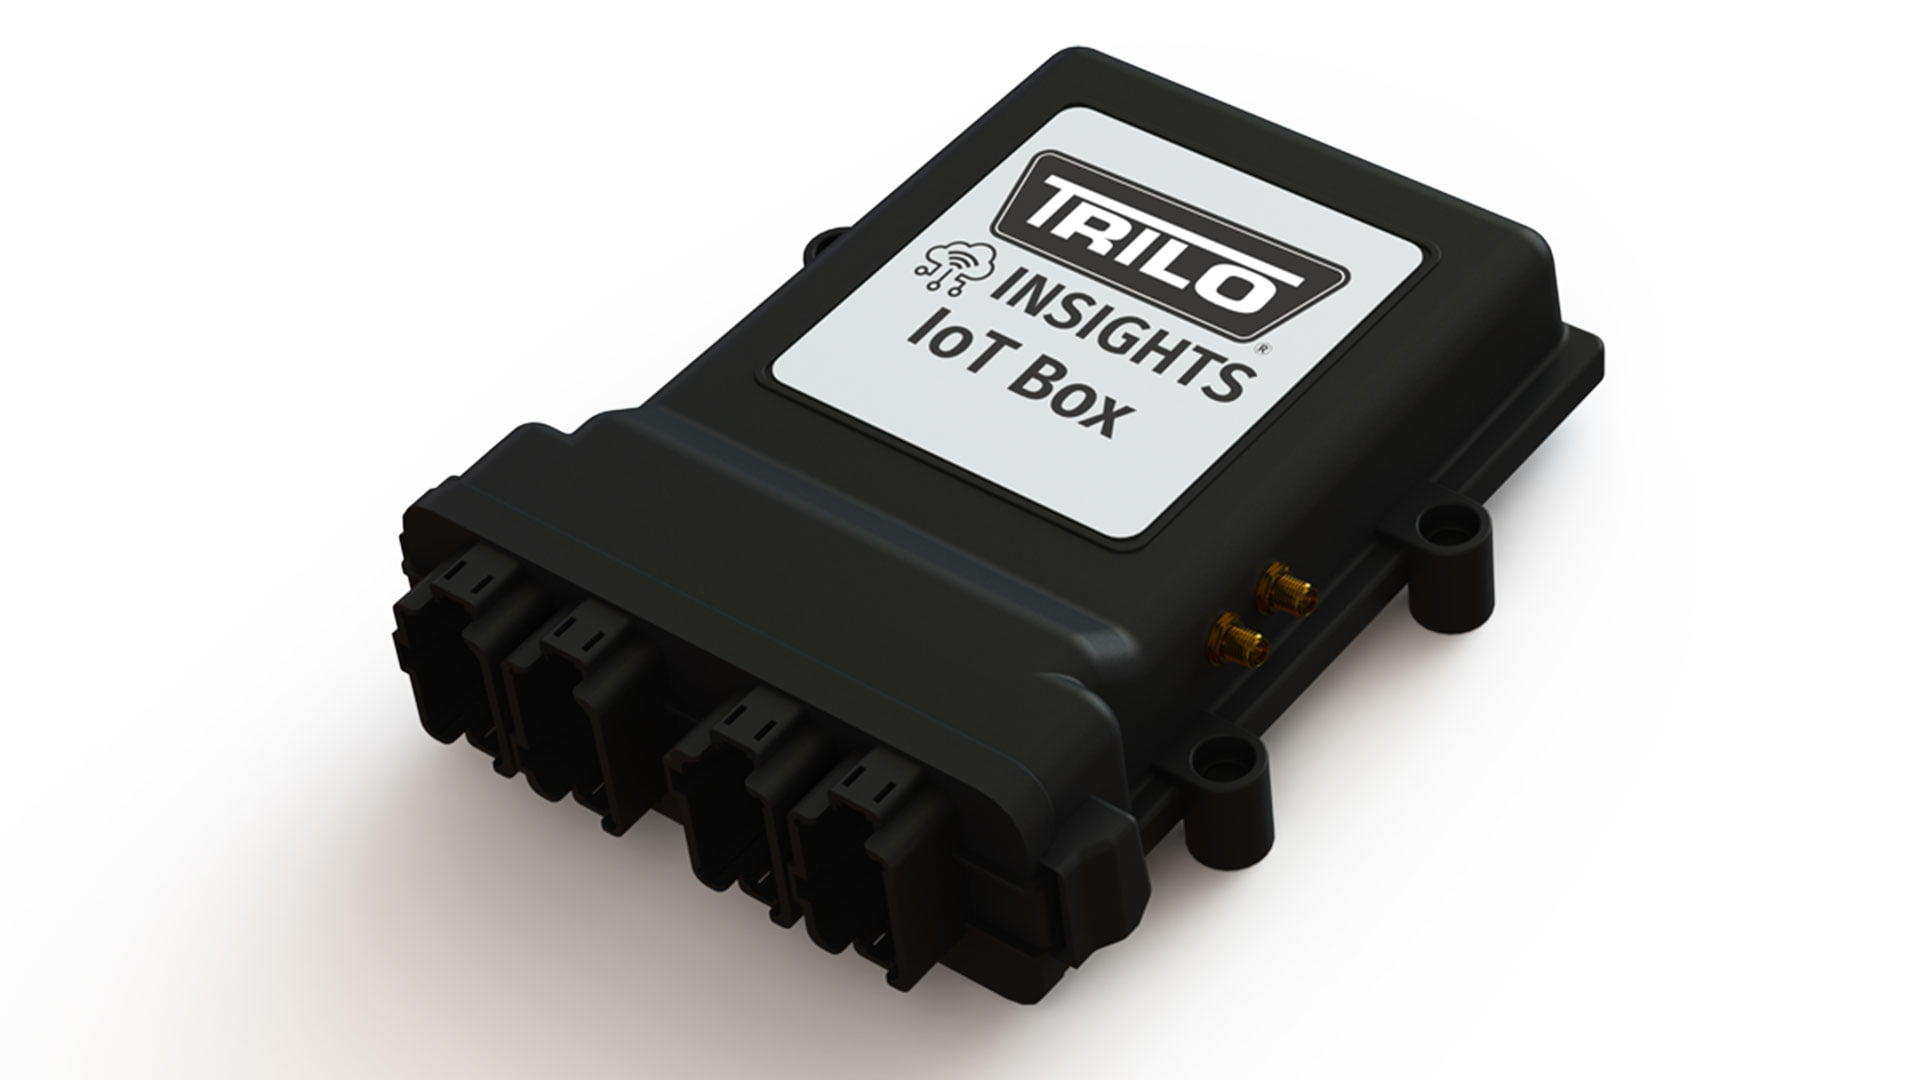 TRILO Insights IoT Box